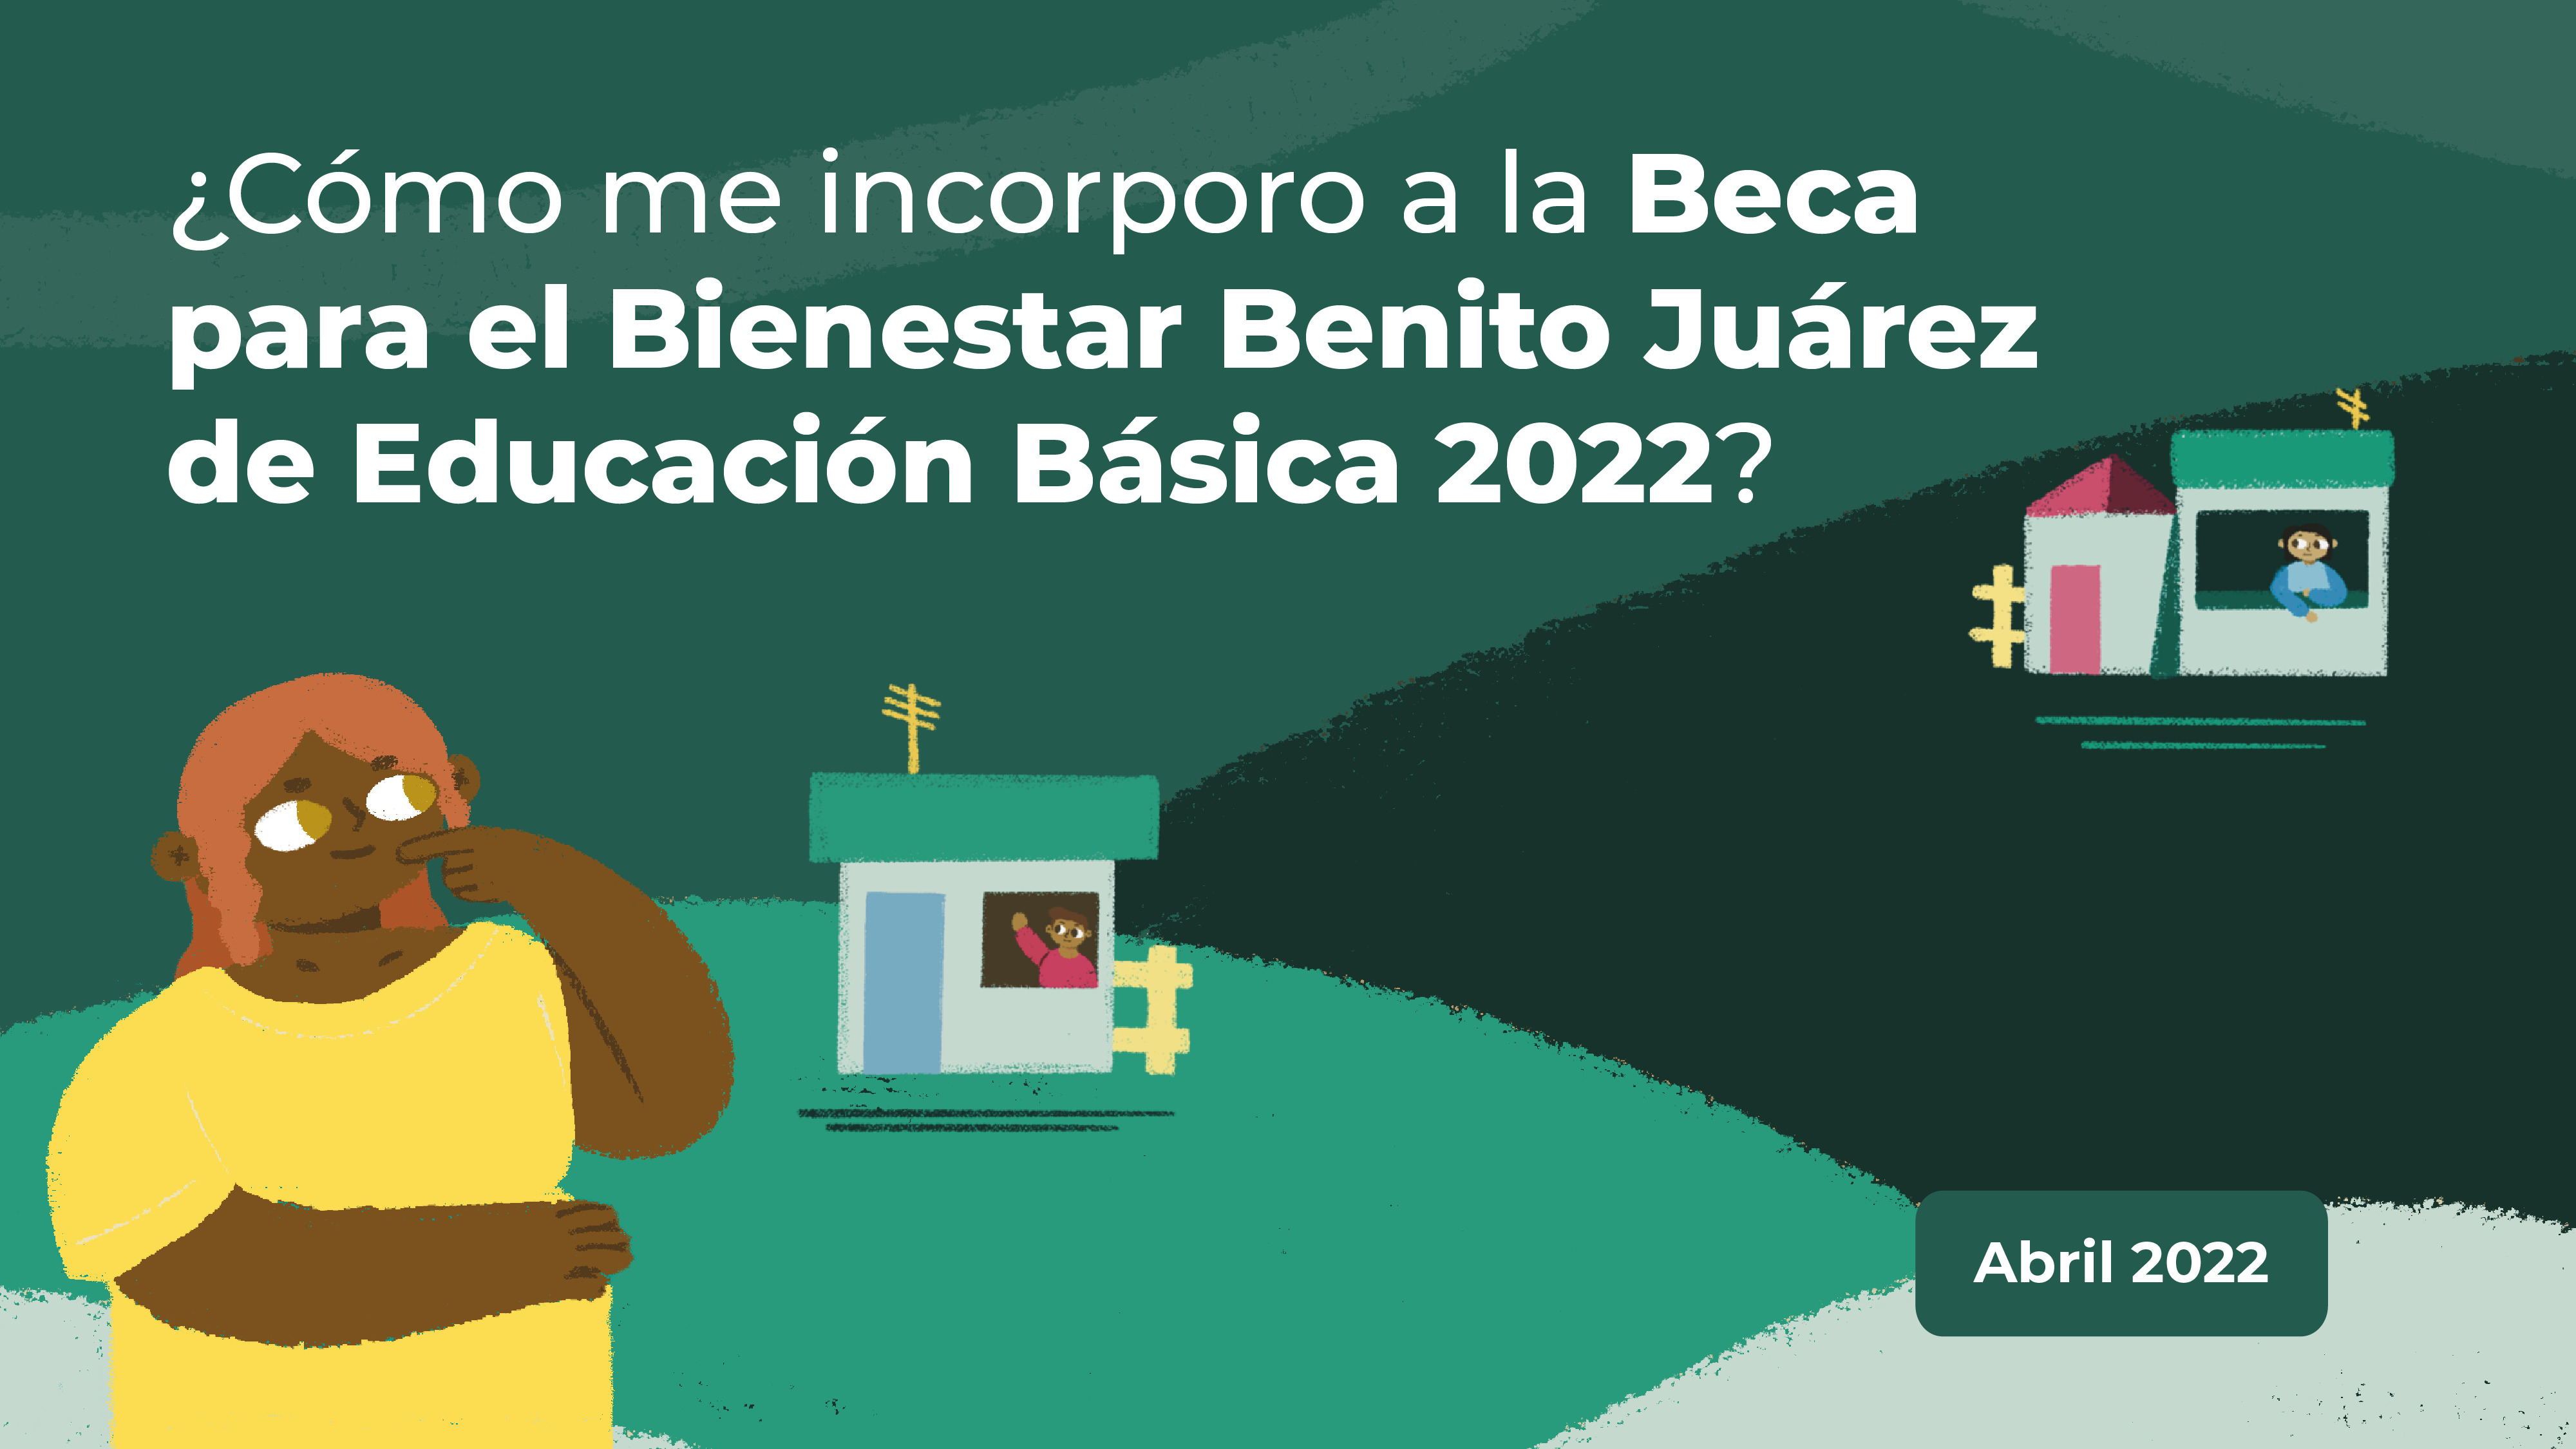 ¡Revisa cómo puedes incorporar a tu familia a la Beca para el Bienestar Benito Juárez de Educación Básica 2022! 